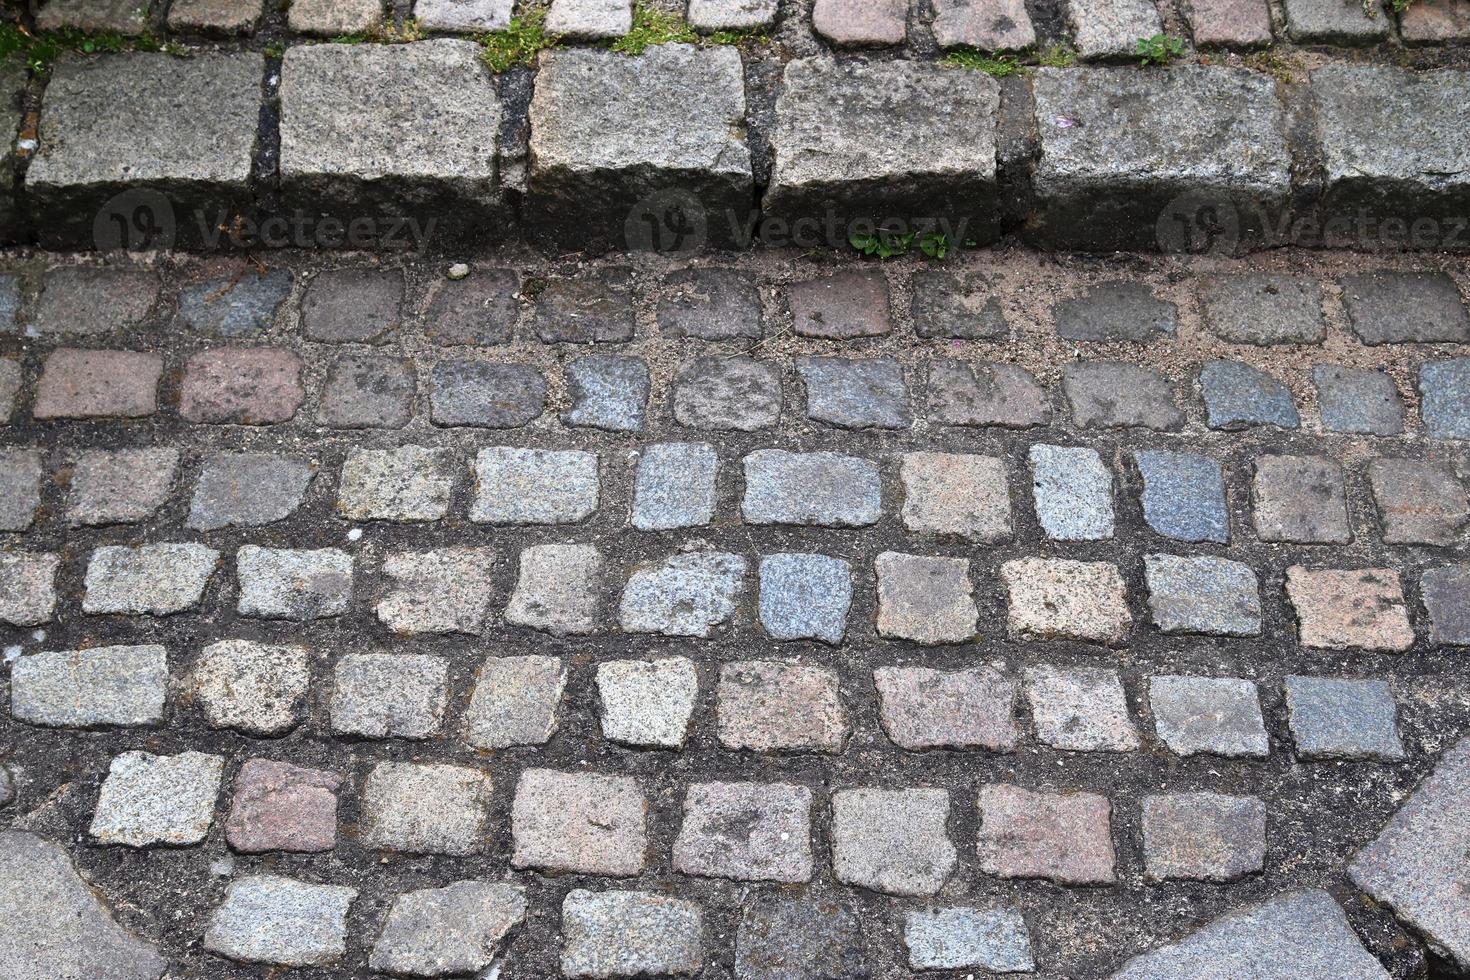 gedetailleerde close-up op oude historische geplaveide wegen en voetpaden foto